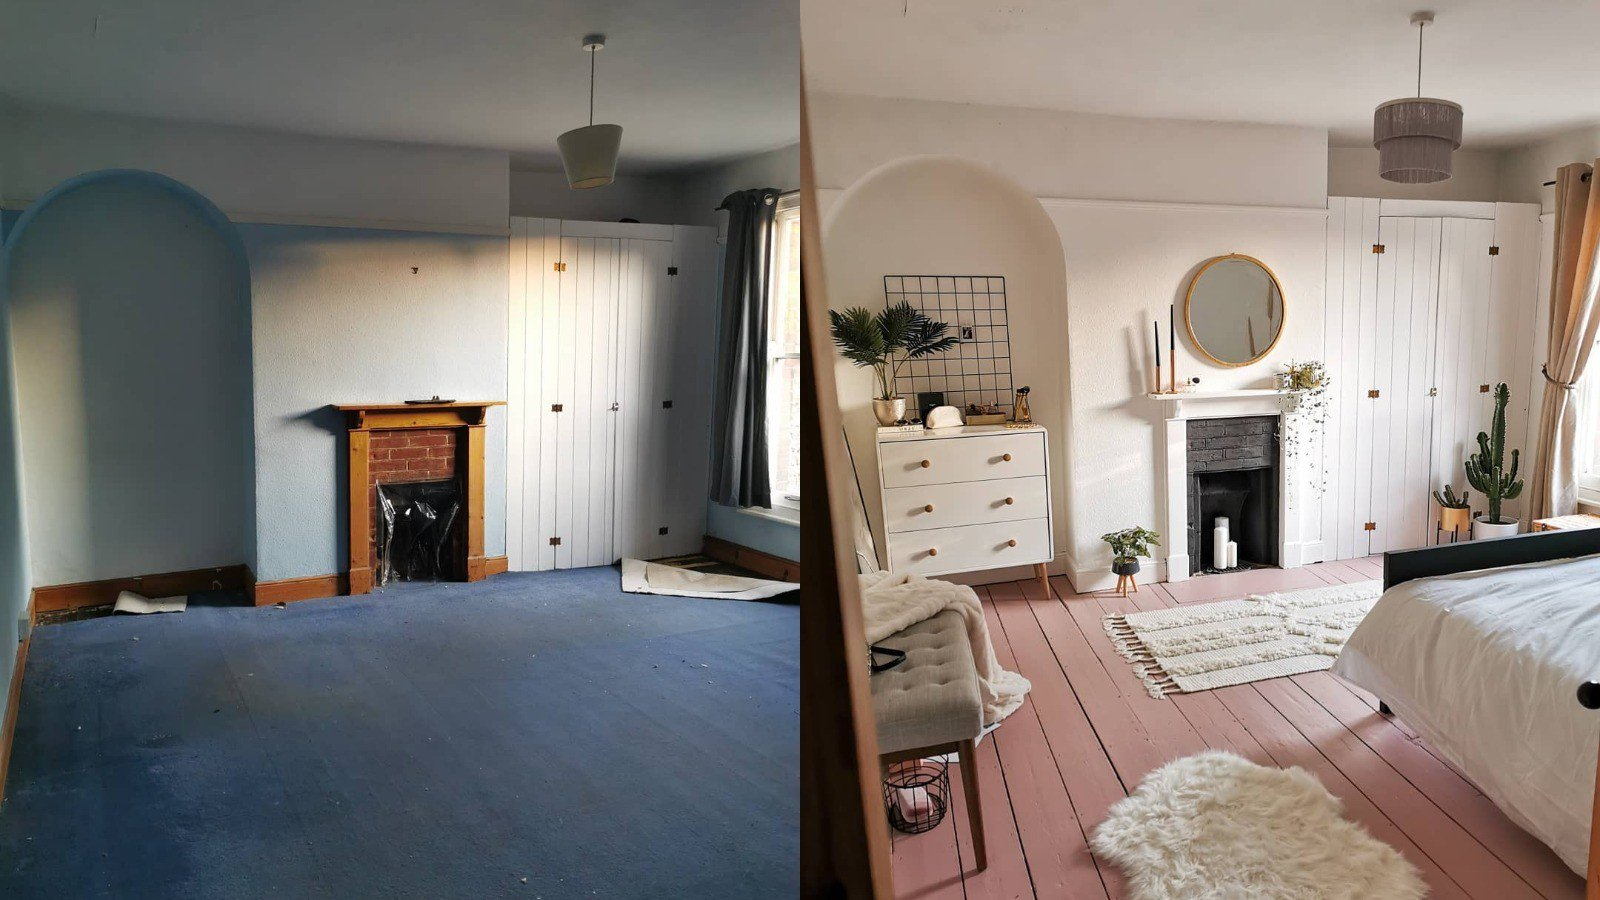 Комната до и после